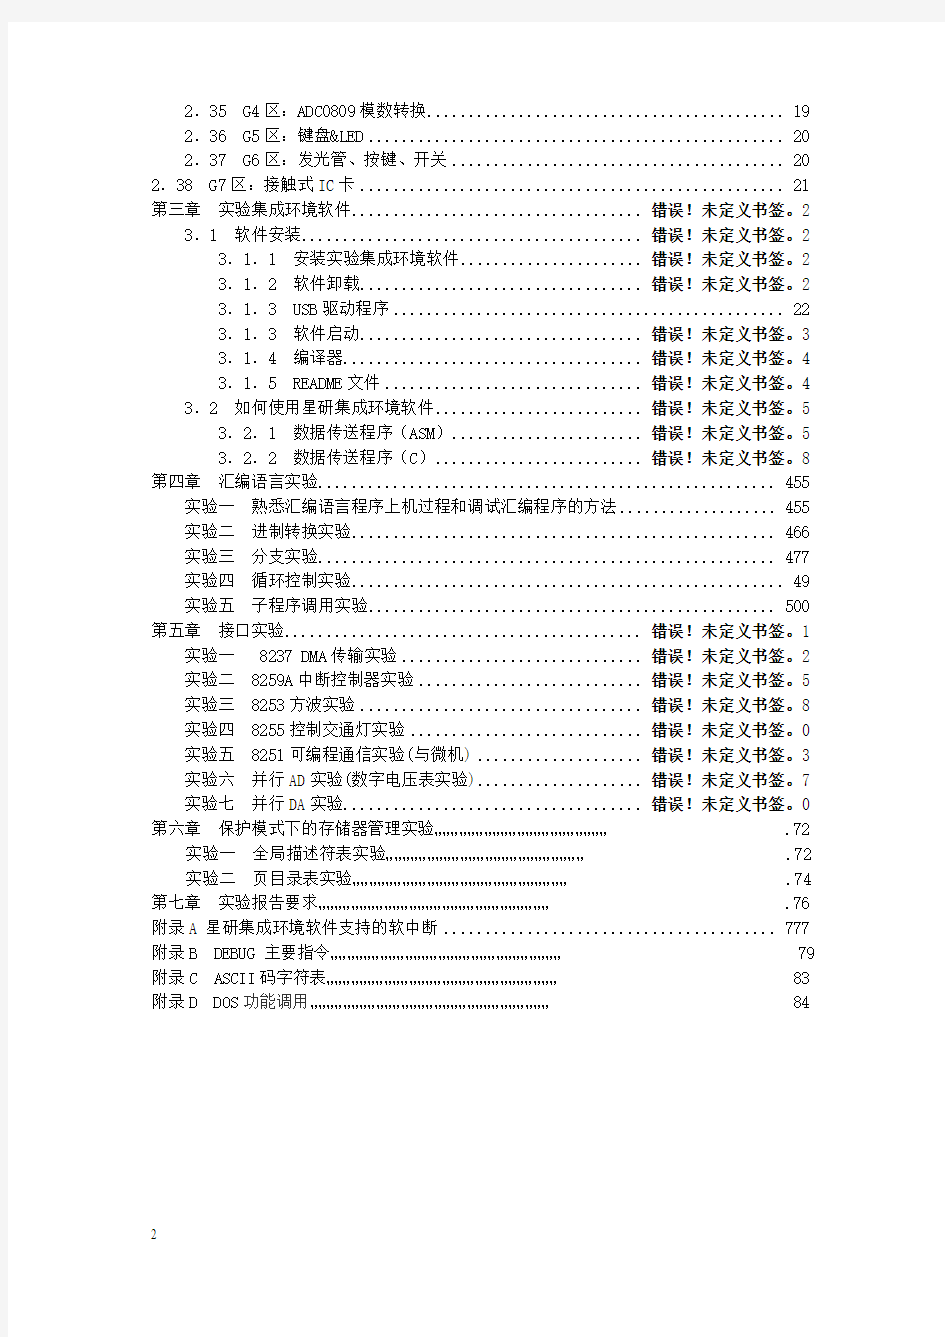 微型计算机原理与接口技术实验指导书正文(V3.0)